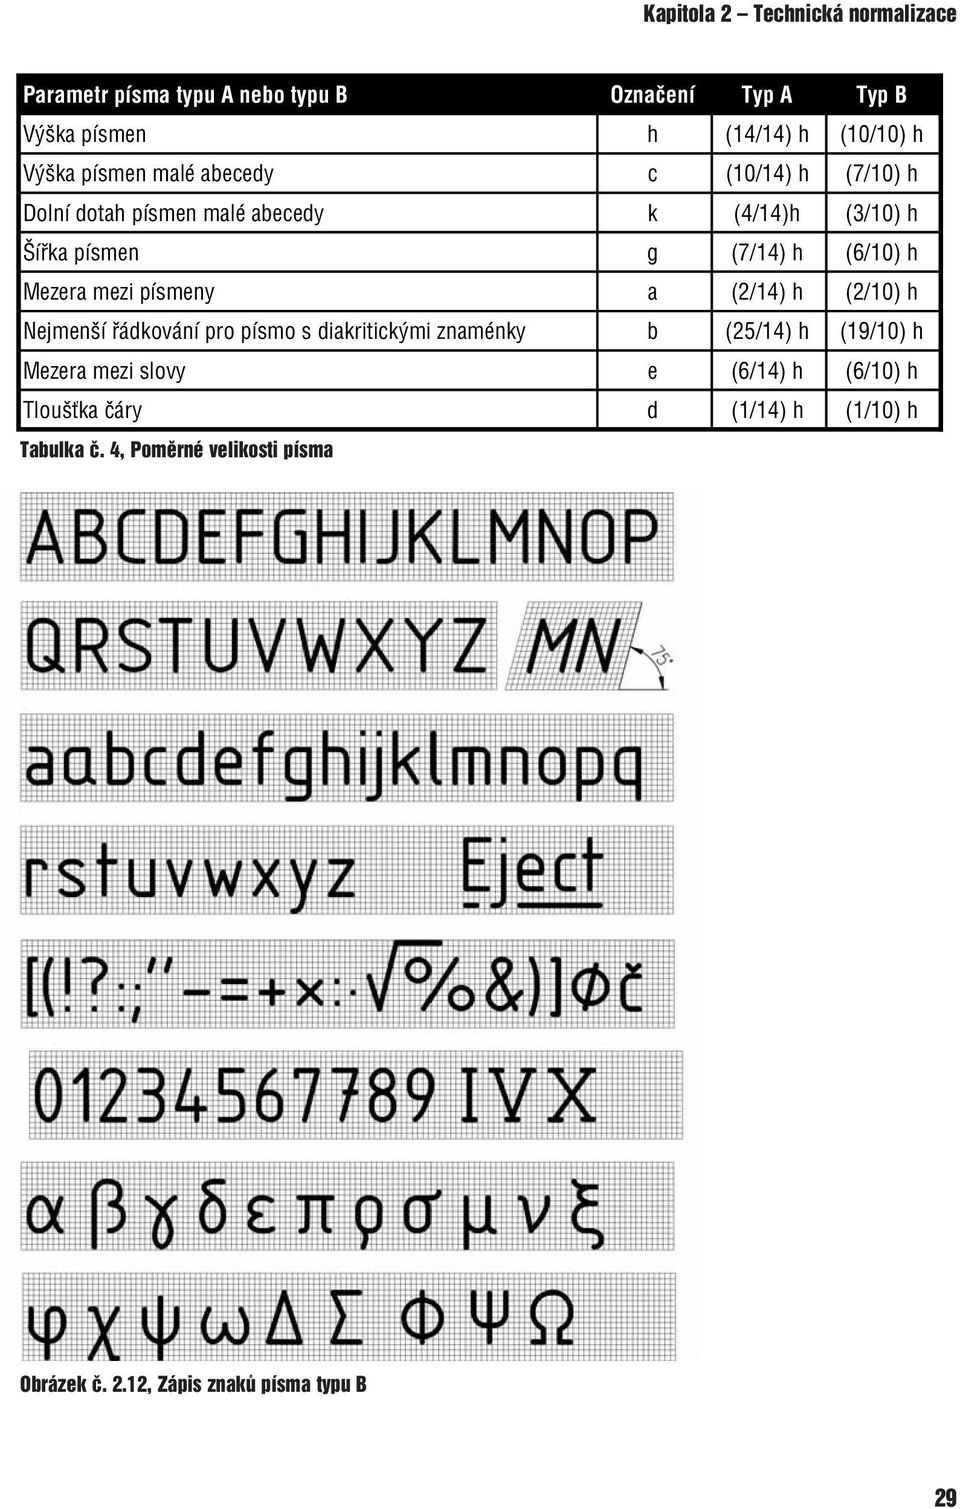 Mezera mezi písmeny a (2/14) h (2/10) h Nejmenší řádkování pro písmo s diakritickými znaménky b (25/14) h (19/10) h Mezera mezi